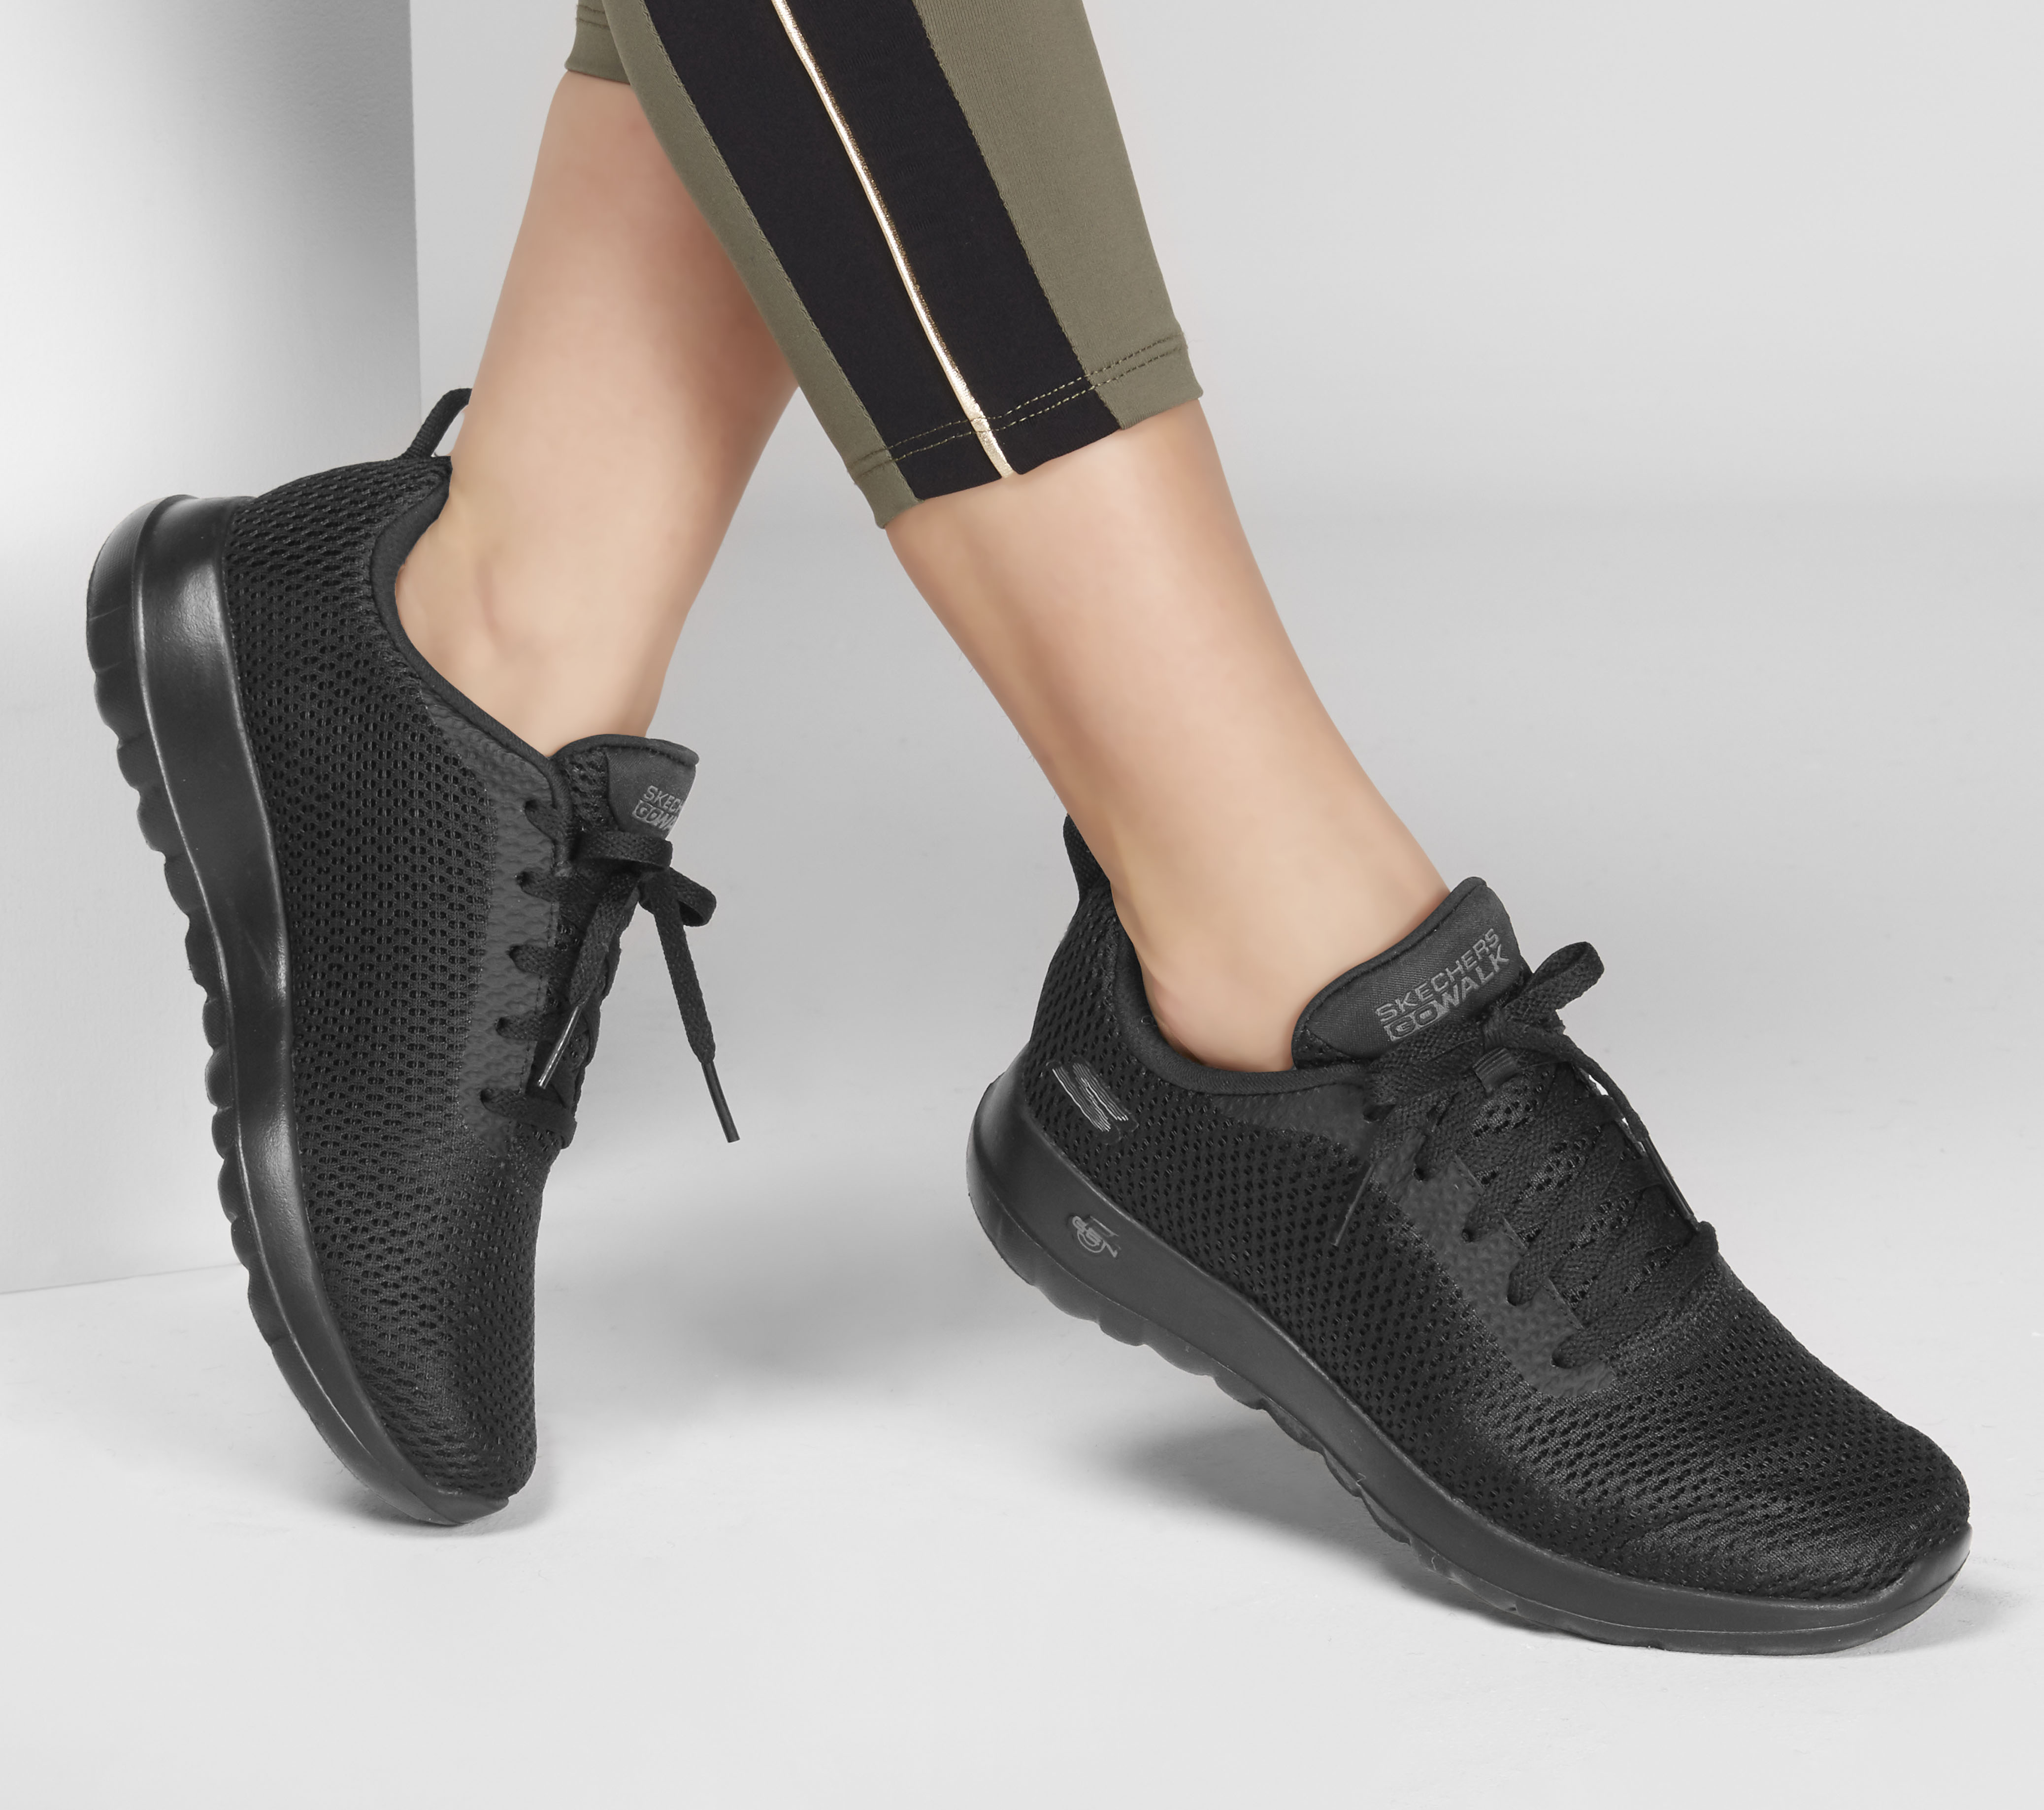 Skechers Women's GOwalk Joy Shoes Black & Black